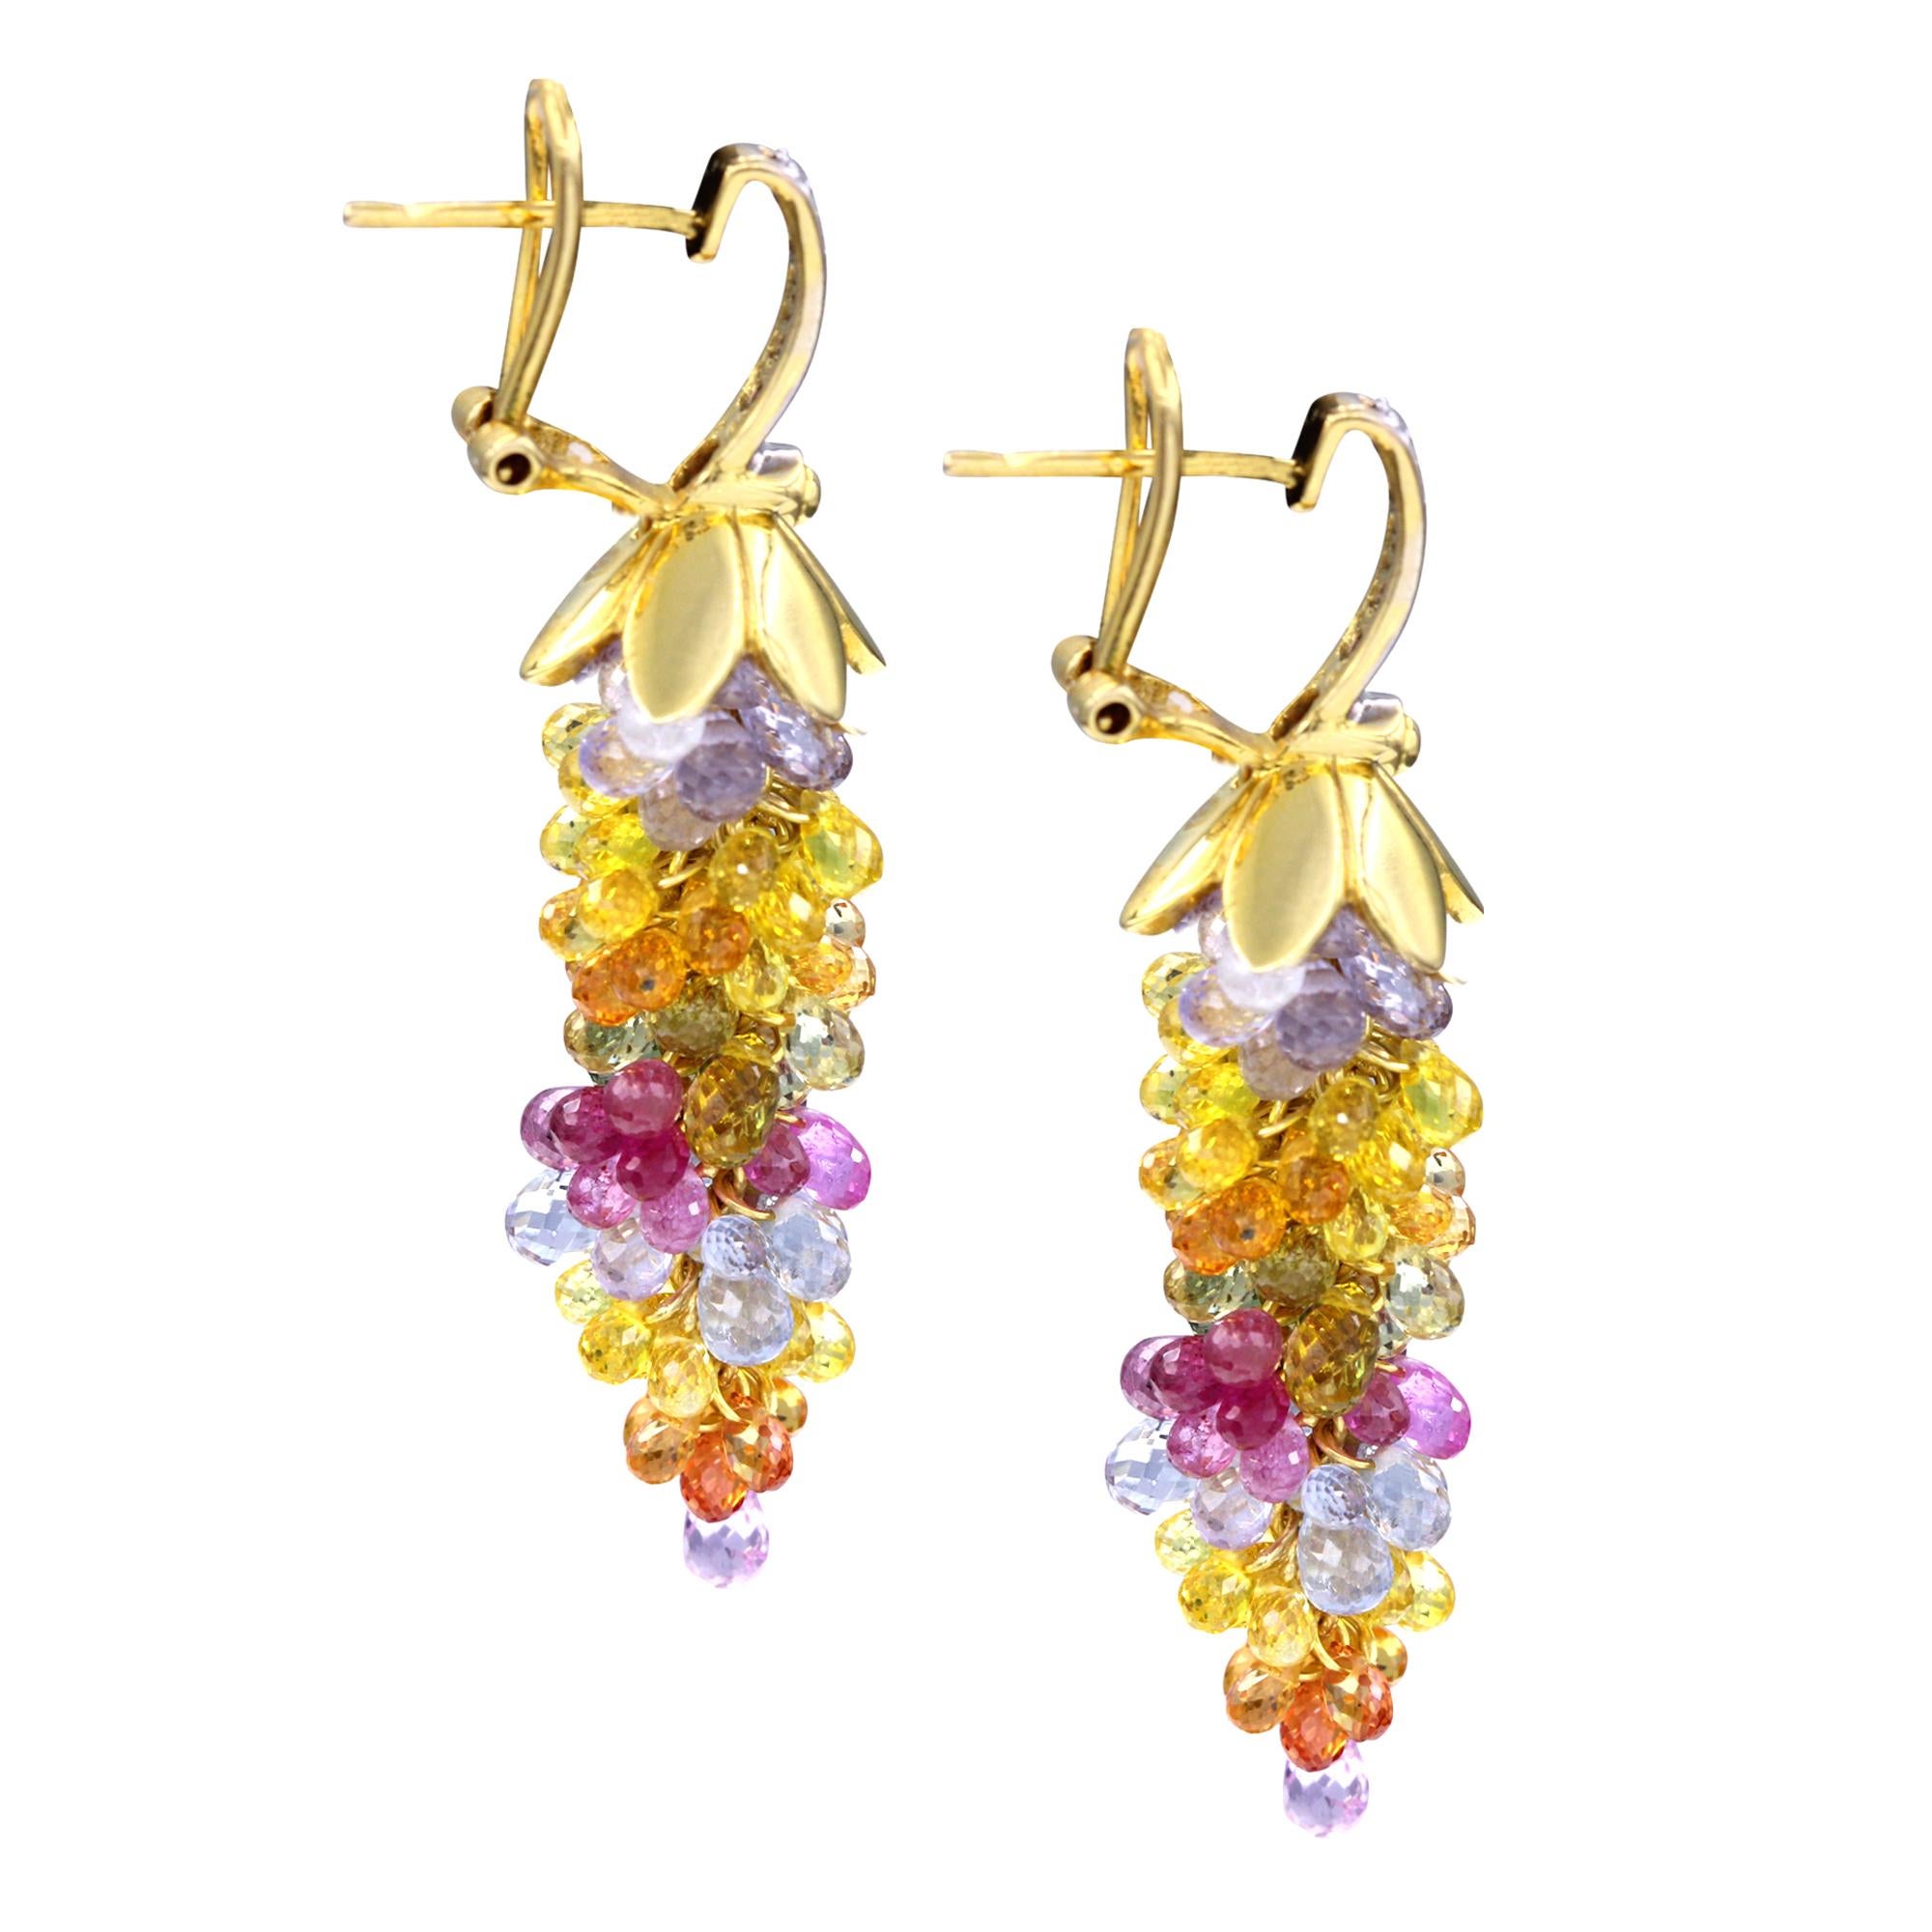 Briolette Cut Multi-Sapphire Chandelier Earrings with Diamonds, 18 Karat Yellow Gold